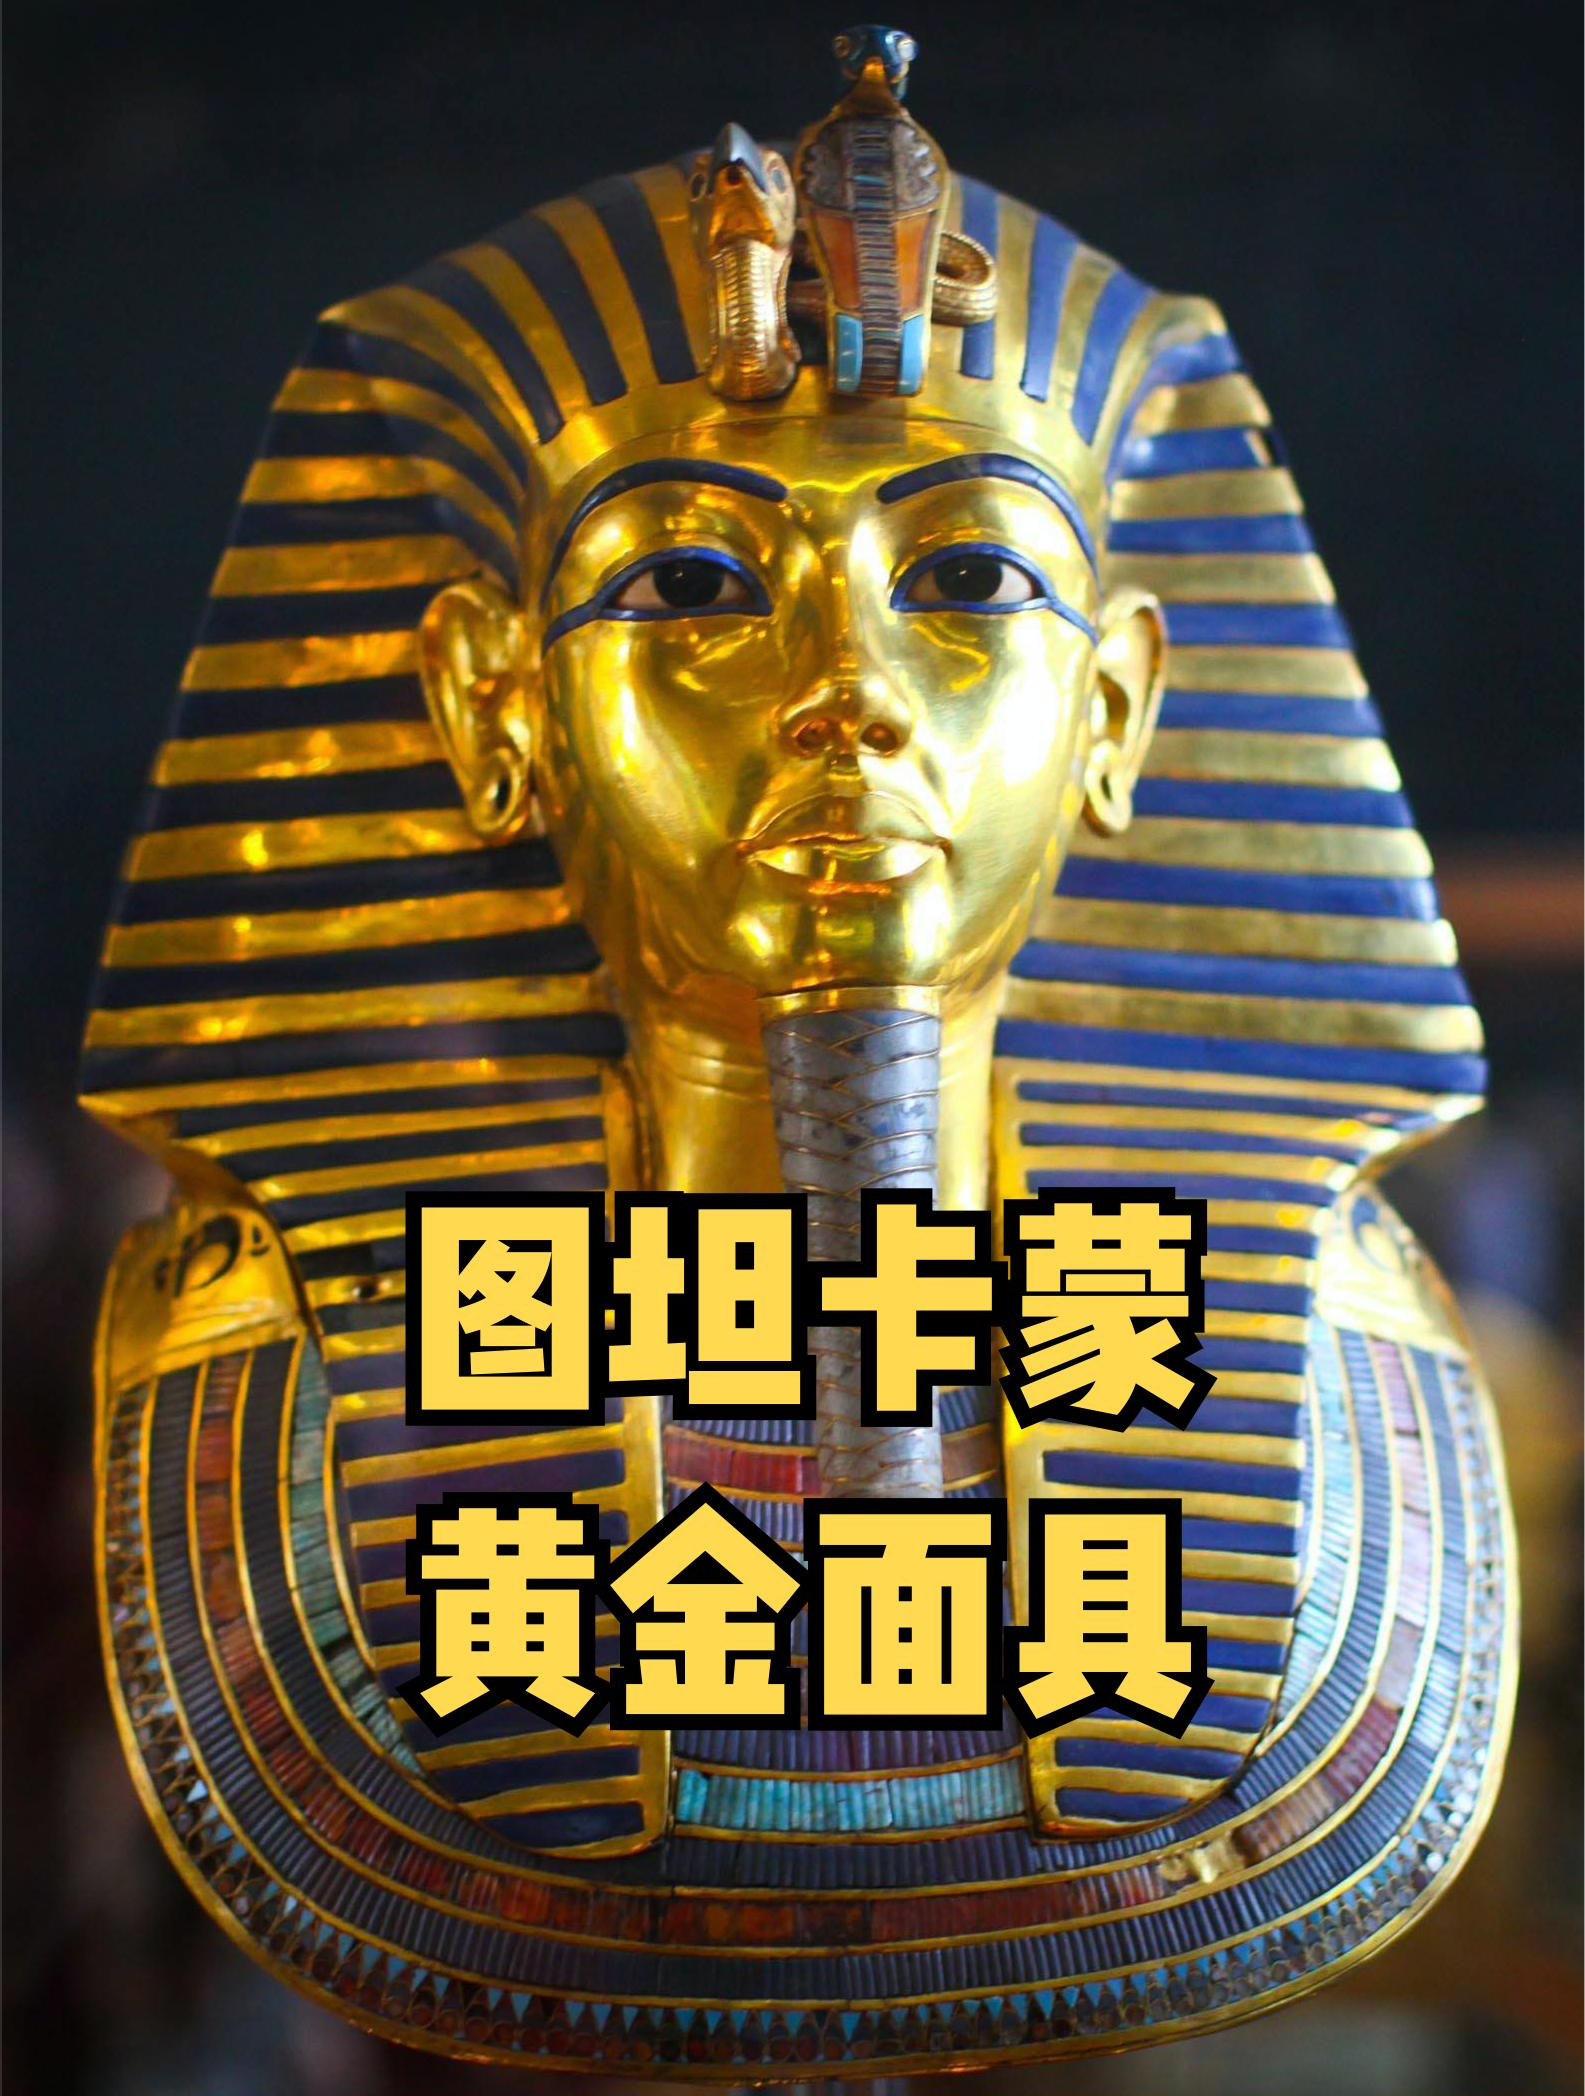 世界估值最高的文物:图坦卡蒙黄金面具